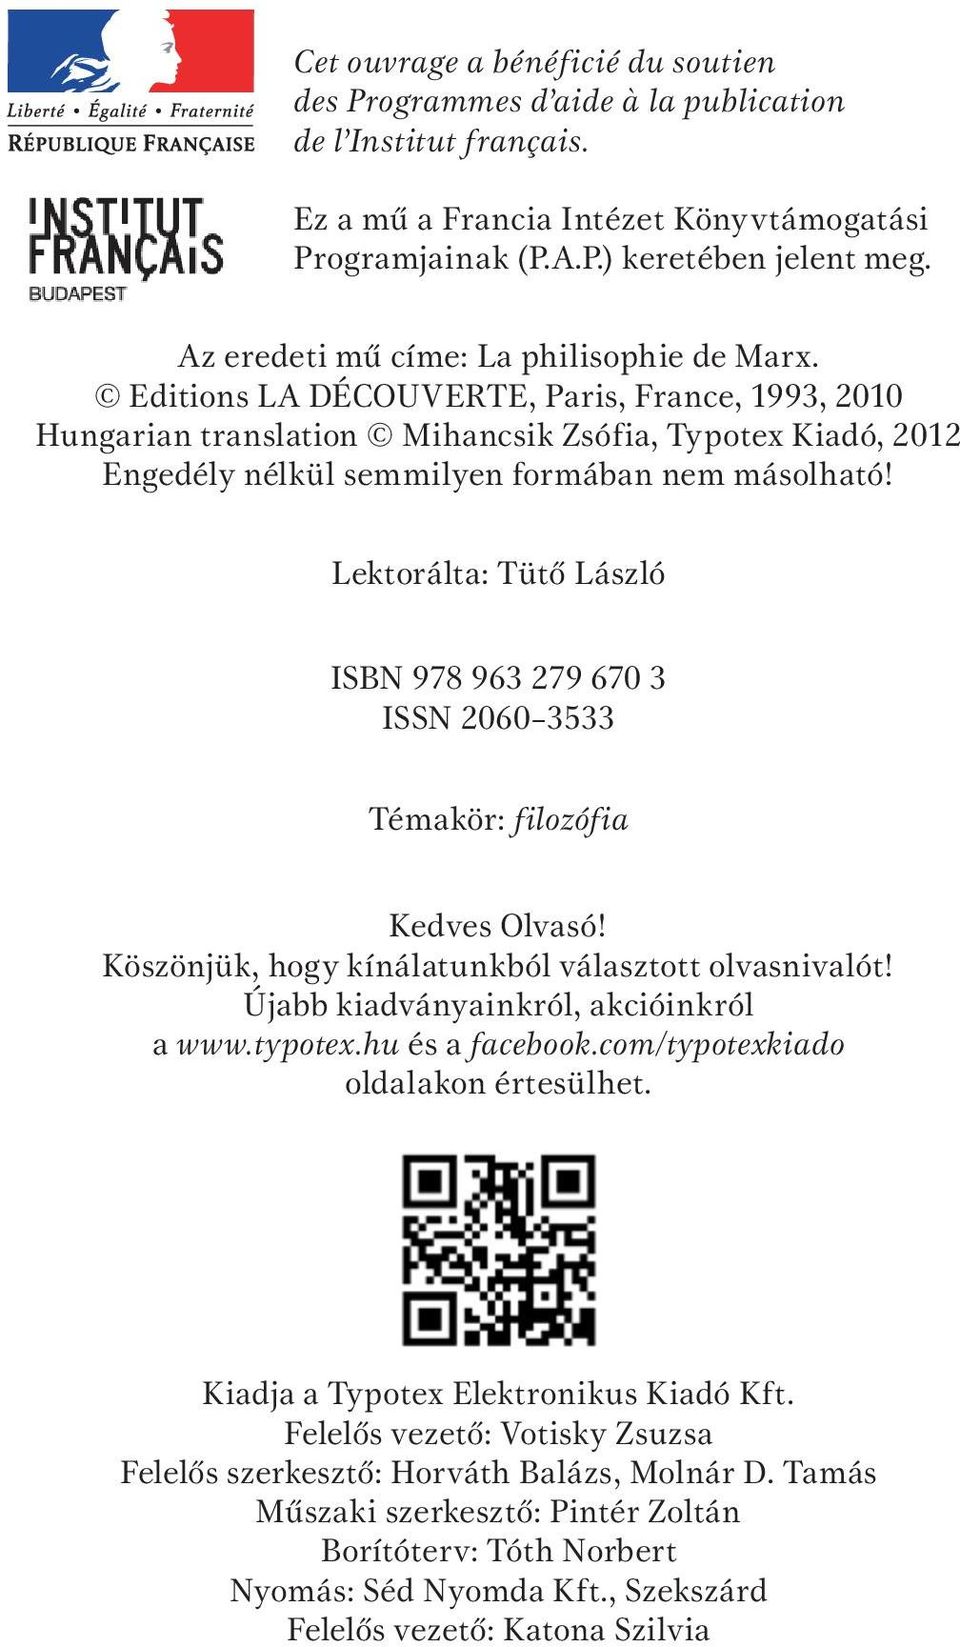 Editions LA DÉCOUVERTE, Paris, France, 1993, 2010 Hungarian translation Mihancsik Zsófia, Typotex Kiadó, 2012 Engedély nélkül semmilyen formában nem másolható!